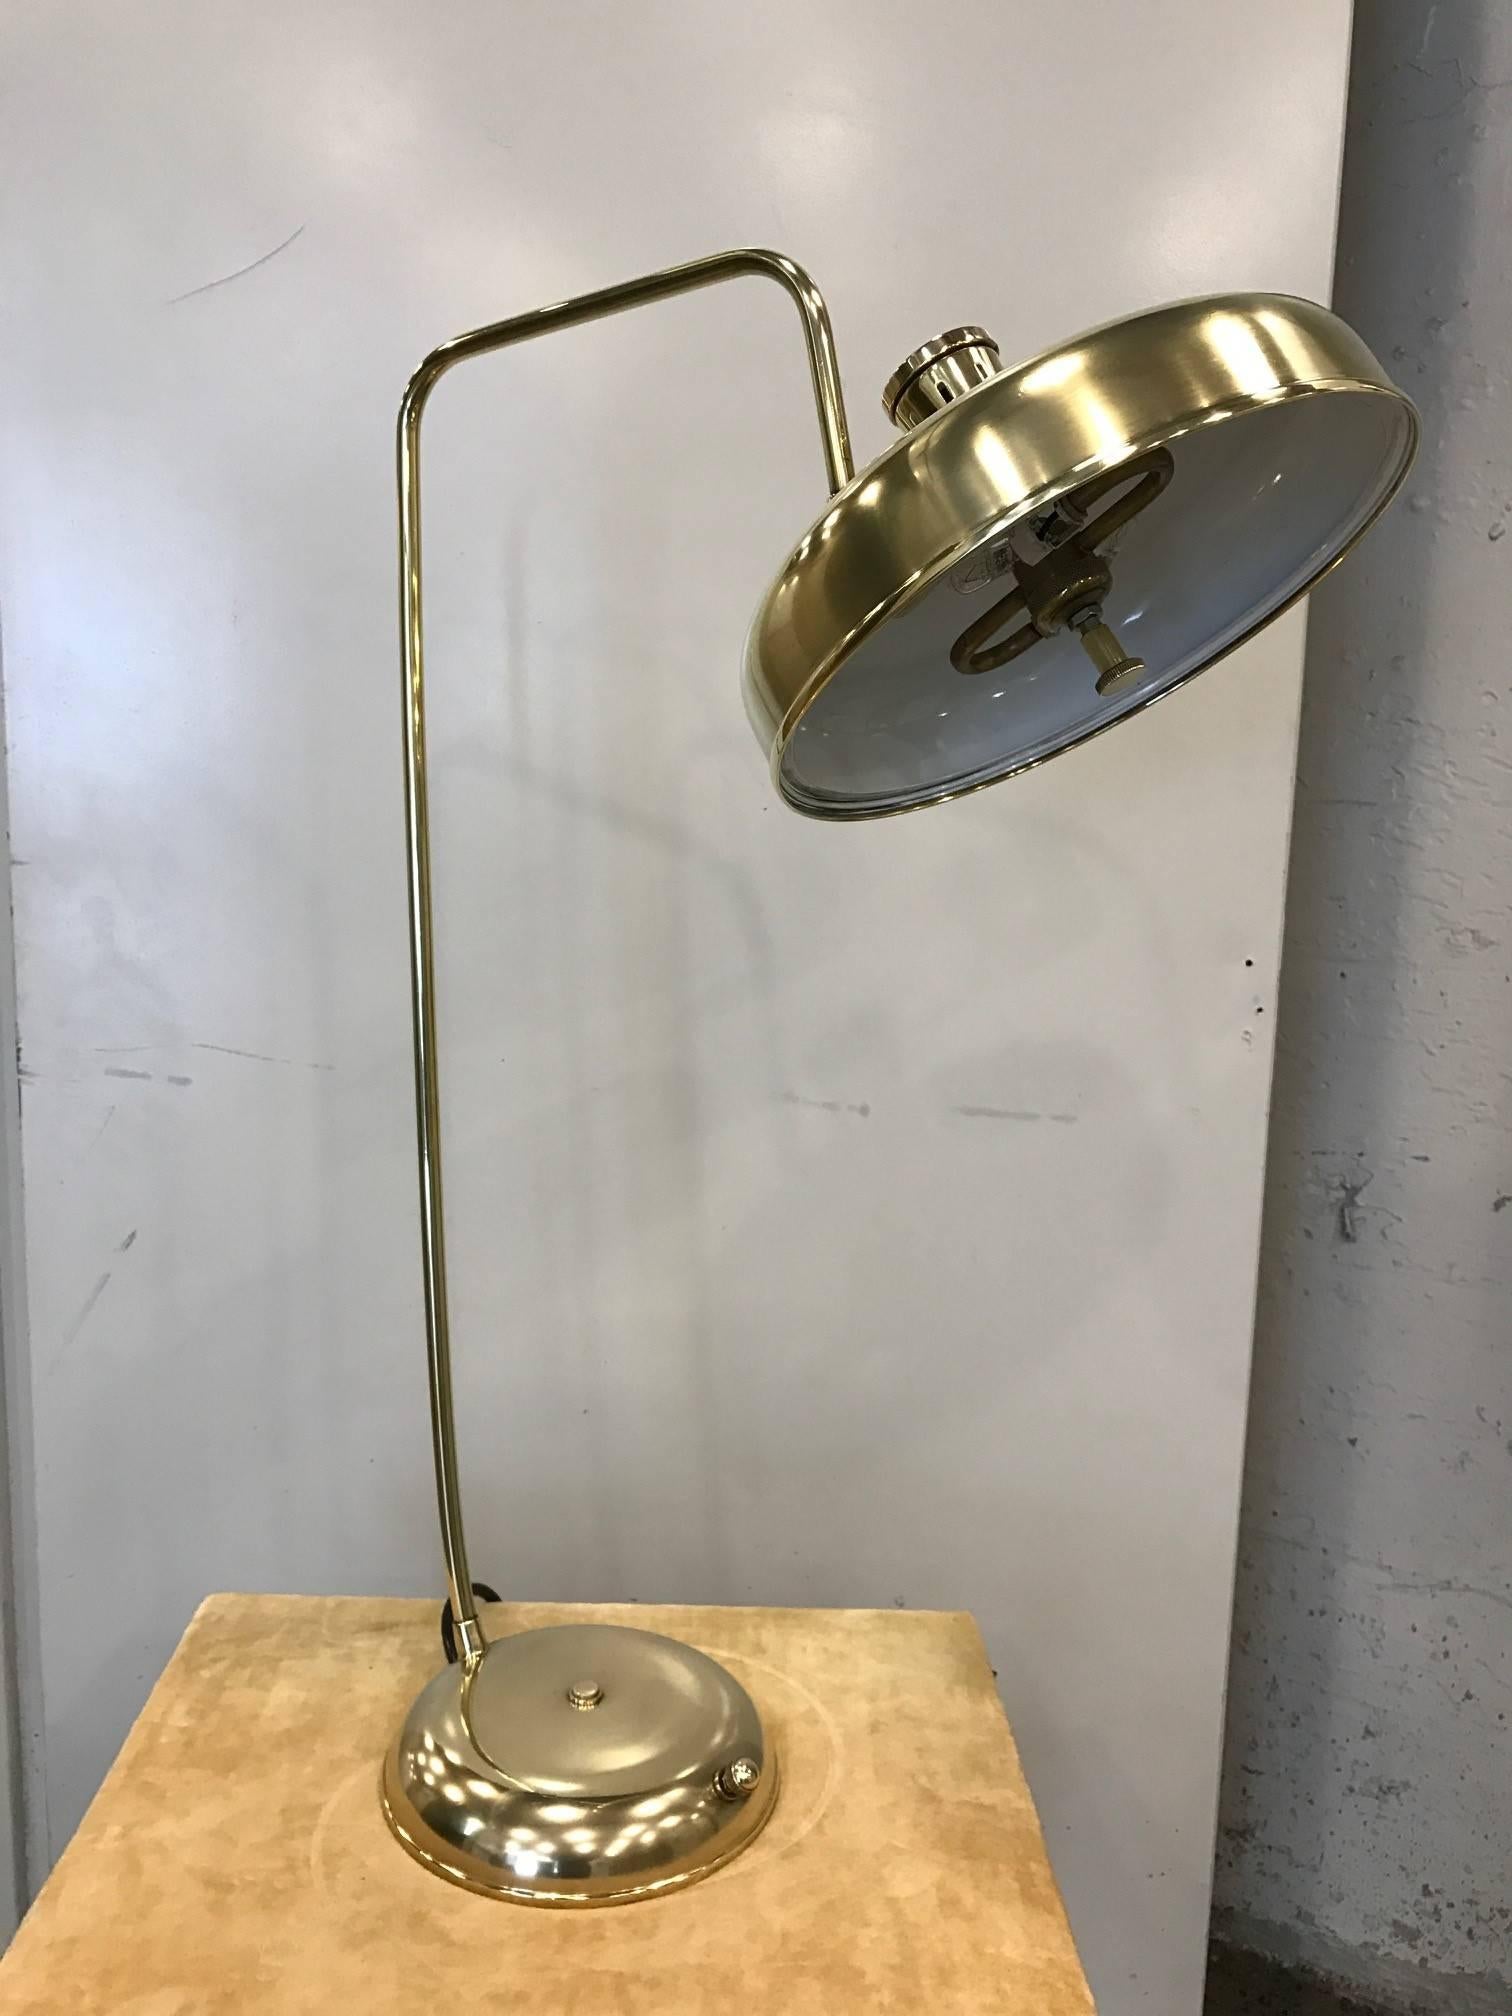 italienische Schreibtischlampe aus poliertem Messing aus den 1950er Jahren. Verfügt über einen gerichteten Farbton. Lampe im industriellen Stil.
Maße: 30.5 Höhe, Schirm 12 im Durchmesser, Sockel 8,5 im Durchmesser.